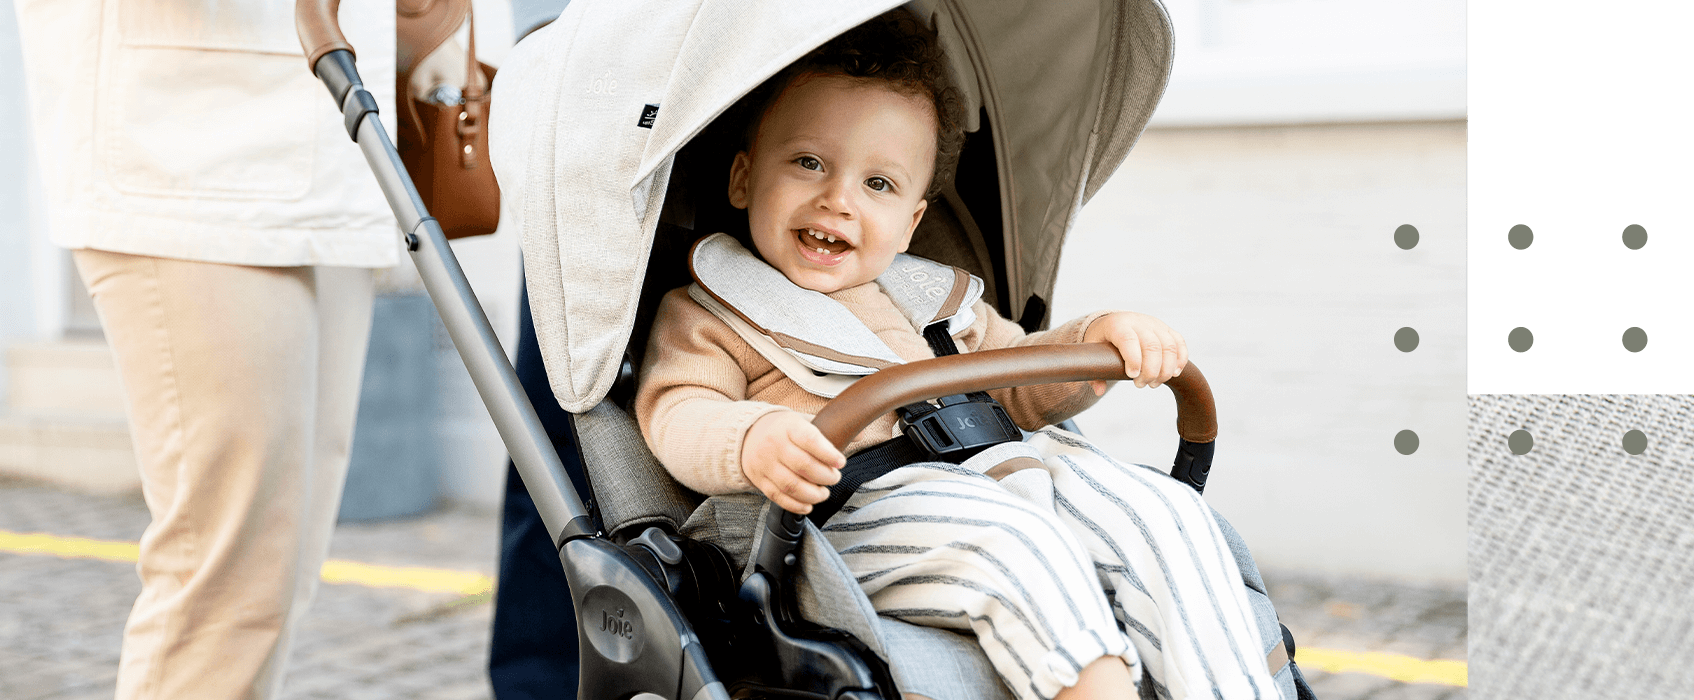 Ein junges Kleinkind mit lockigem Haar lächelt in die Kamera, während es in einem Joie Finiti-Kinderwagen herumgeschoben wird.